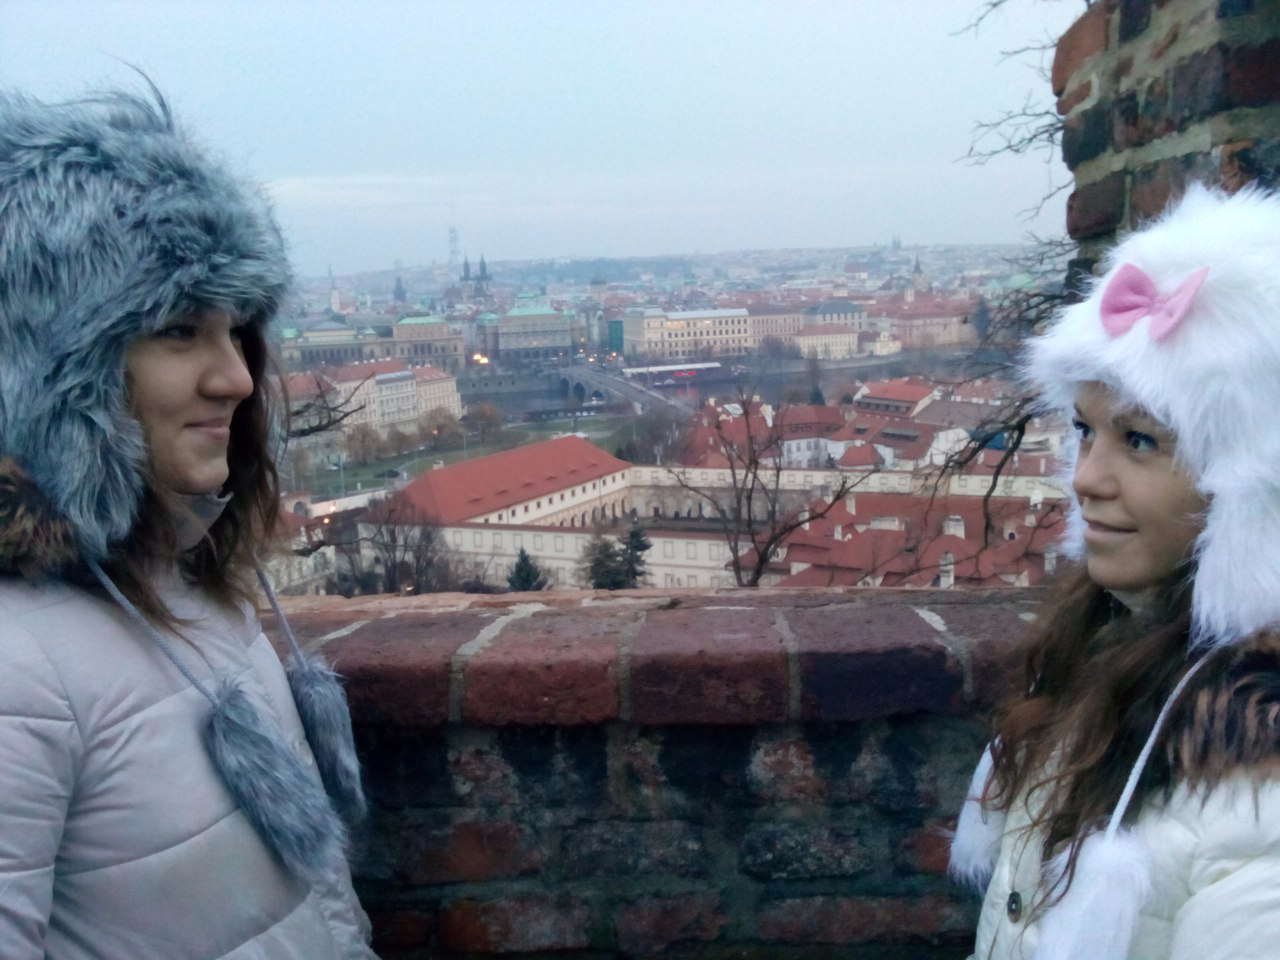 Красные крыши Праги